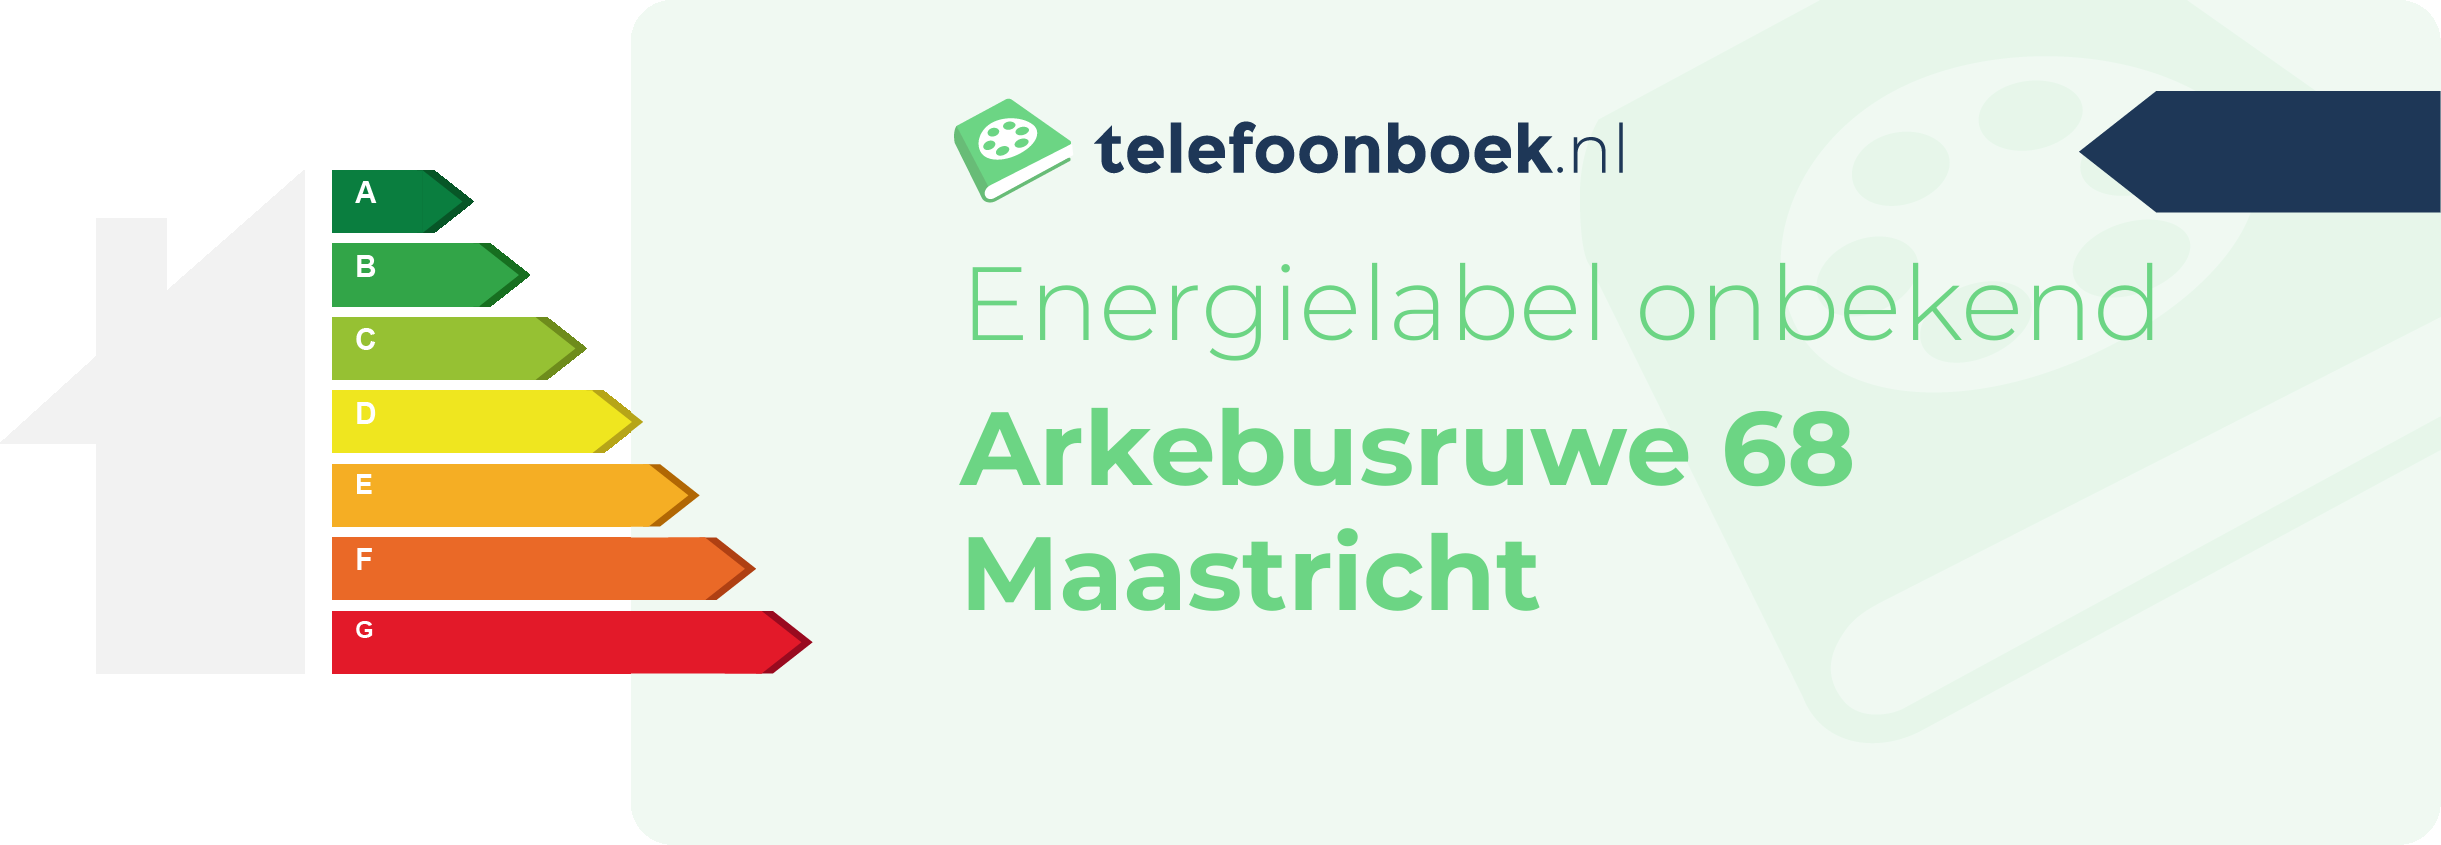 Energielabel Arkebusruwe 68 Maastricht